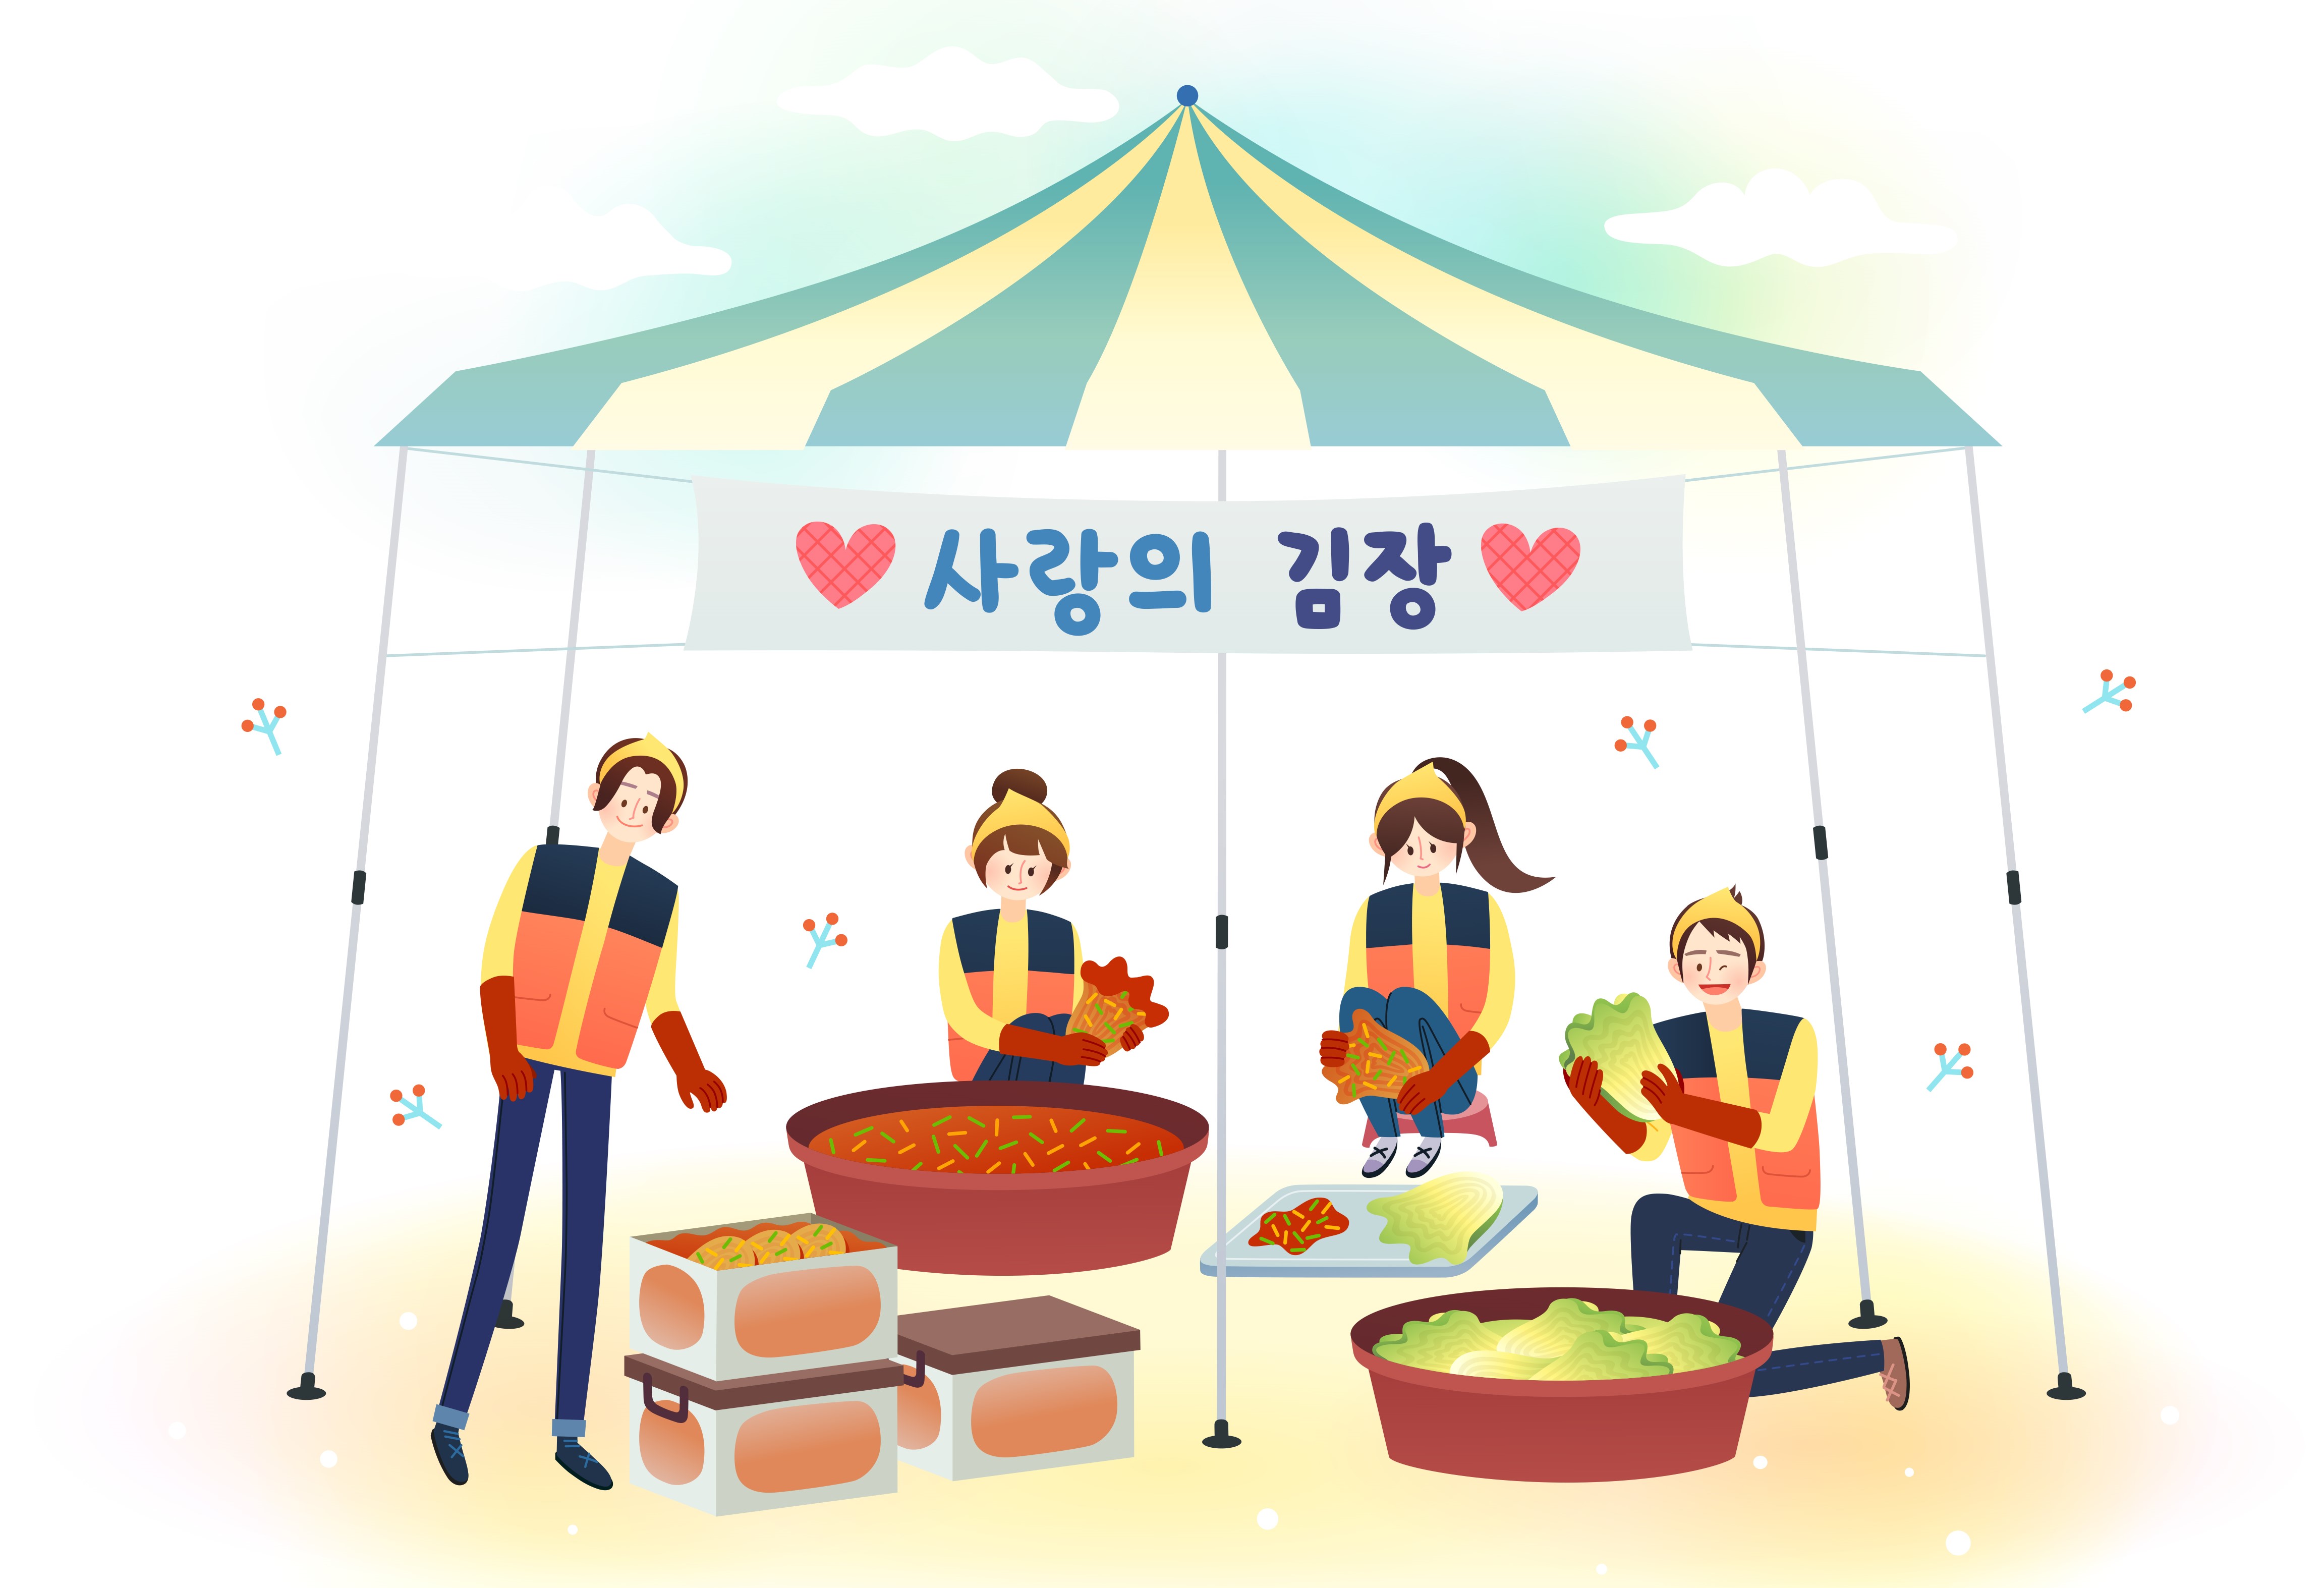 11월 16일 (금) 오전 11시 부터 김장김치 나눔행사가 열립니다! 